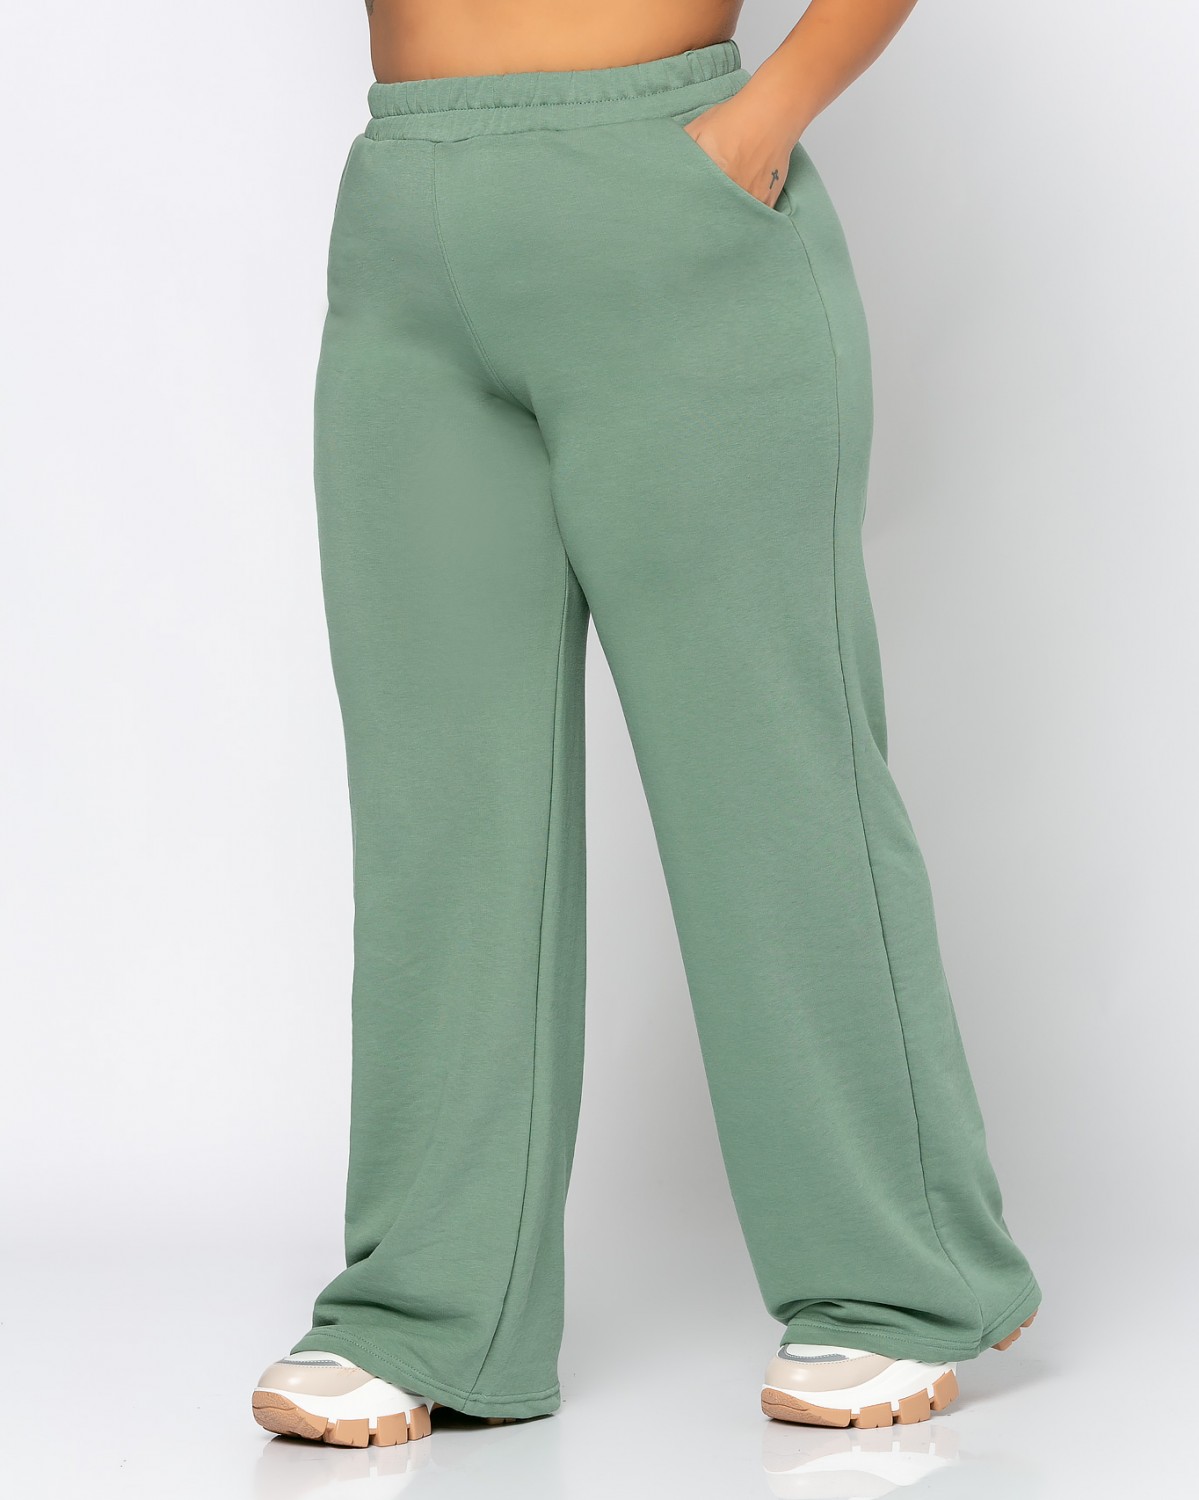 Komplet Crop - spodnie dresowe dzowny, kolor green olive